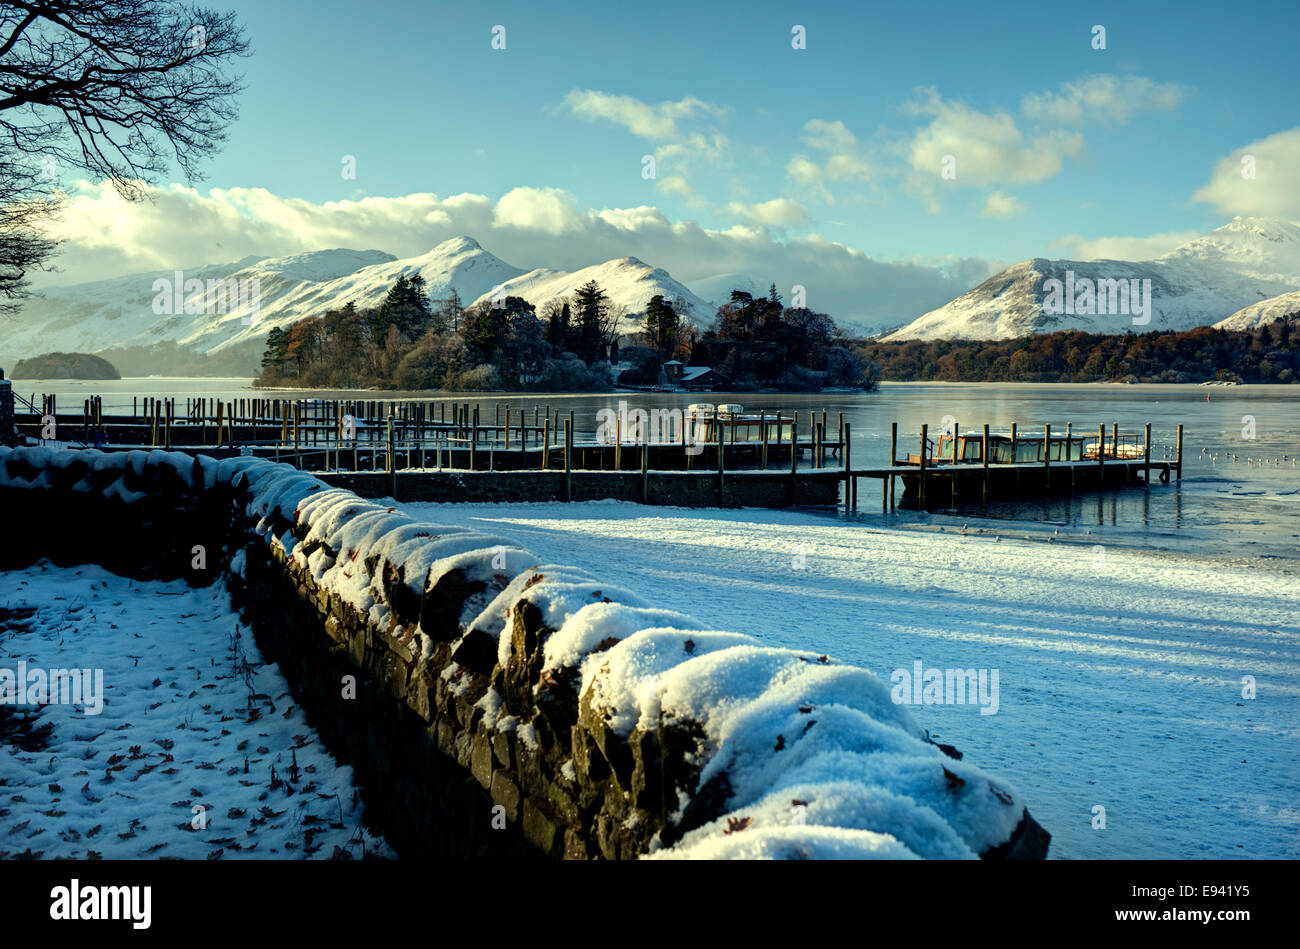 Winter morning at Derwentwater, Keswick, English Lake District, UK. Stock Photo